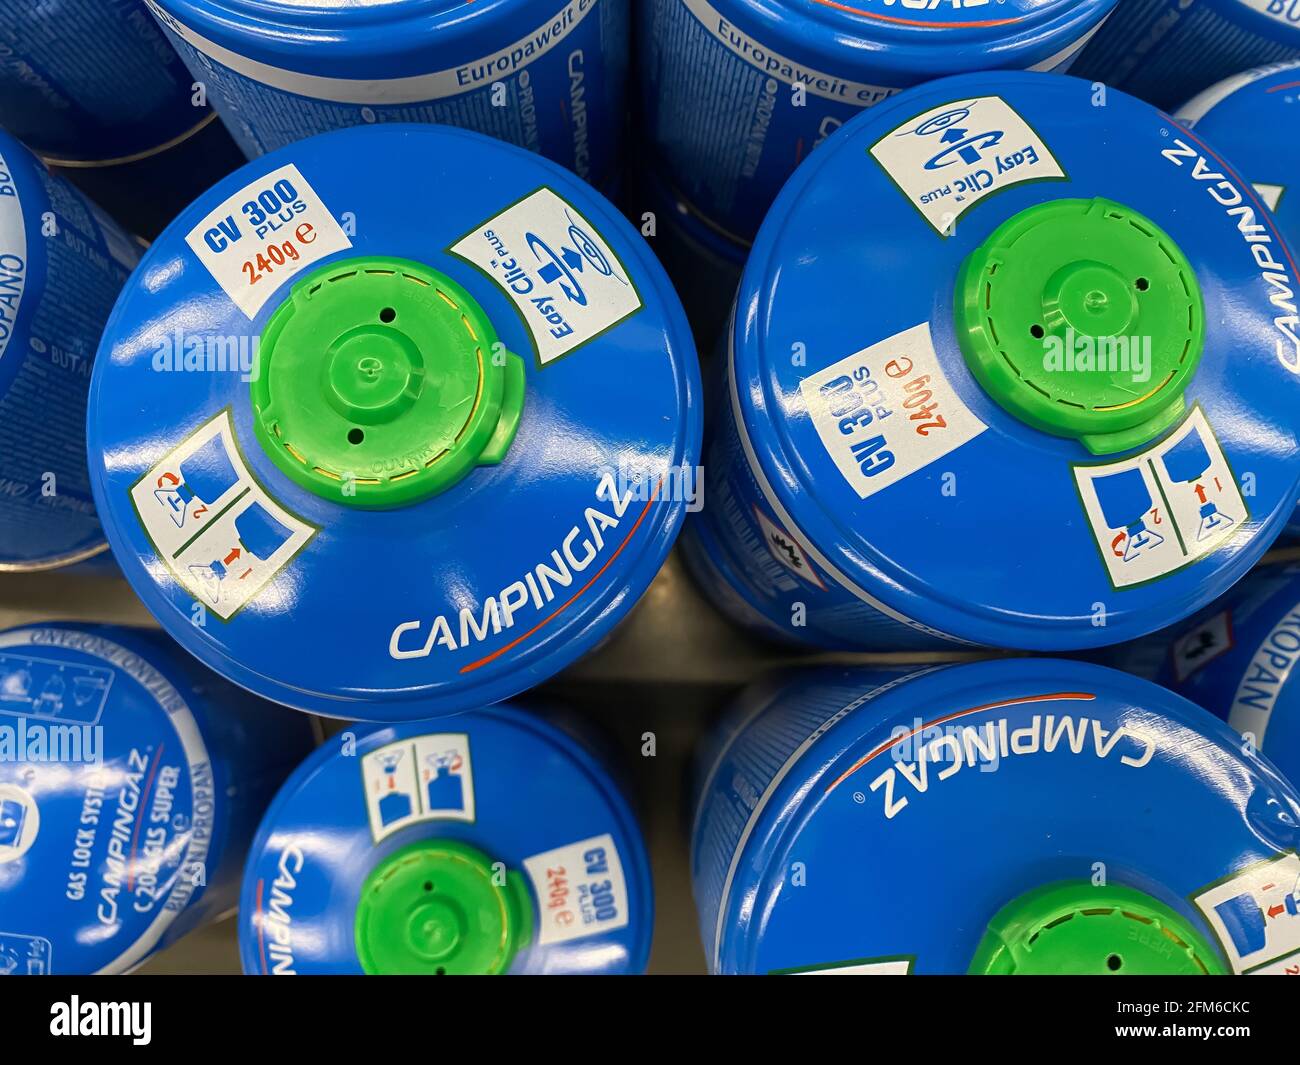 Viersen, Alemania - mayo de 6. 2021: Cierre de las botellas de gas propano  de butano campingaz de camping azul en la estantería del supermercado  alemán Fotografía de stock - Alamy